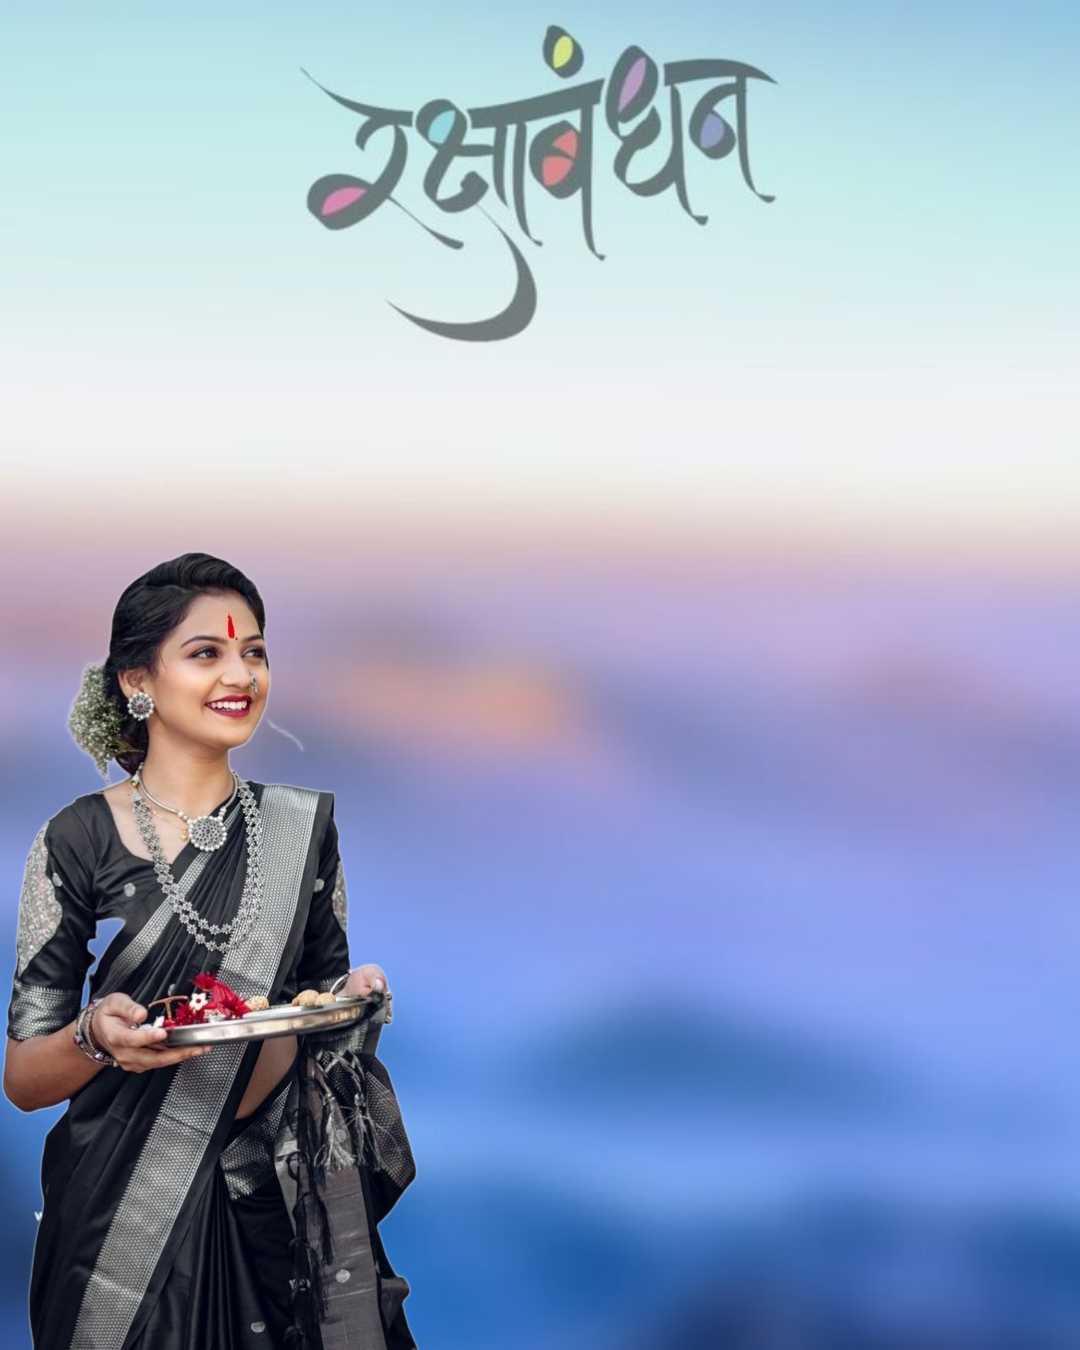 New Raksha Bandhan Photo Editing Background Images with girls